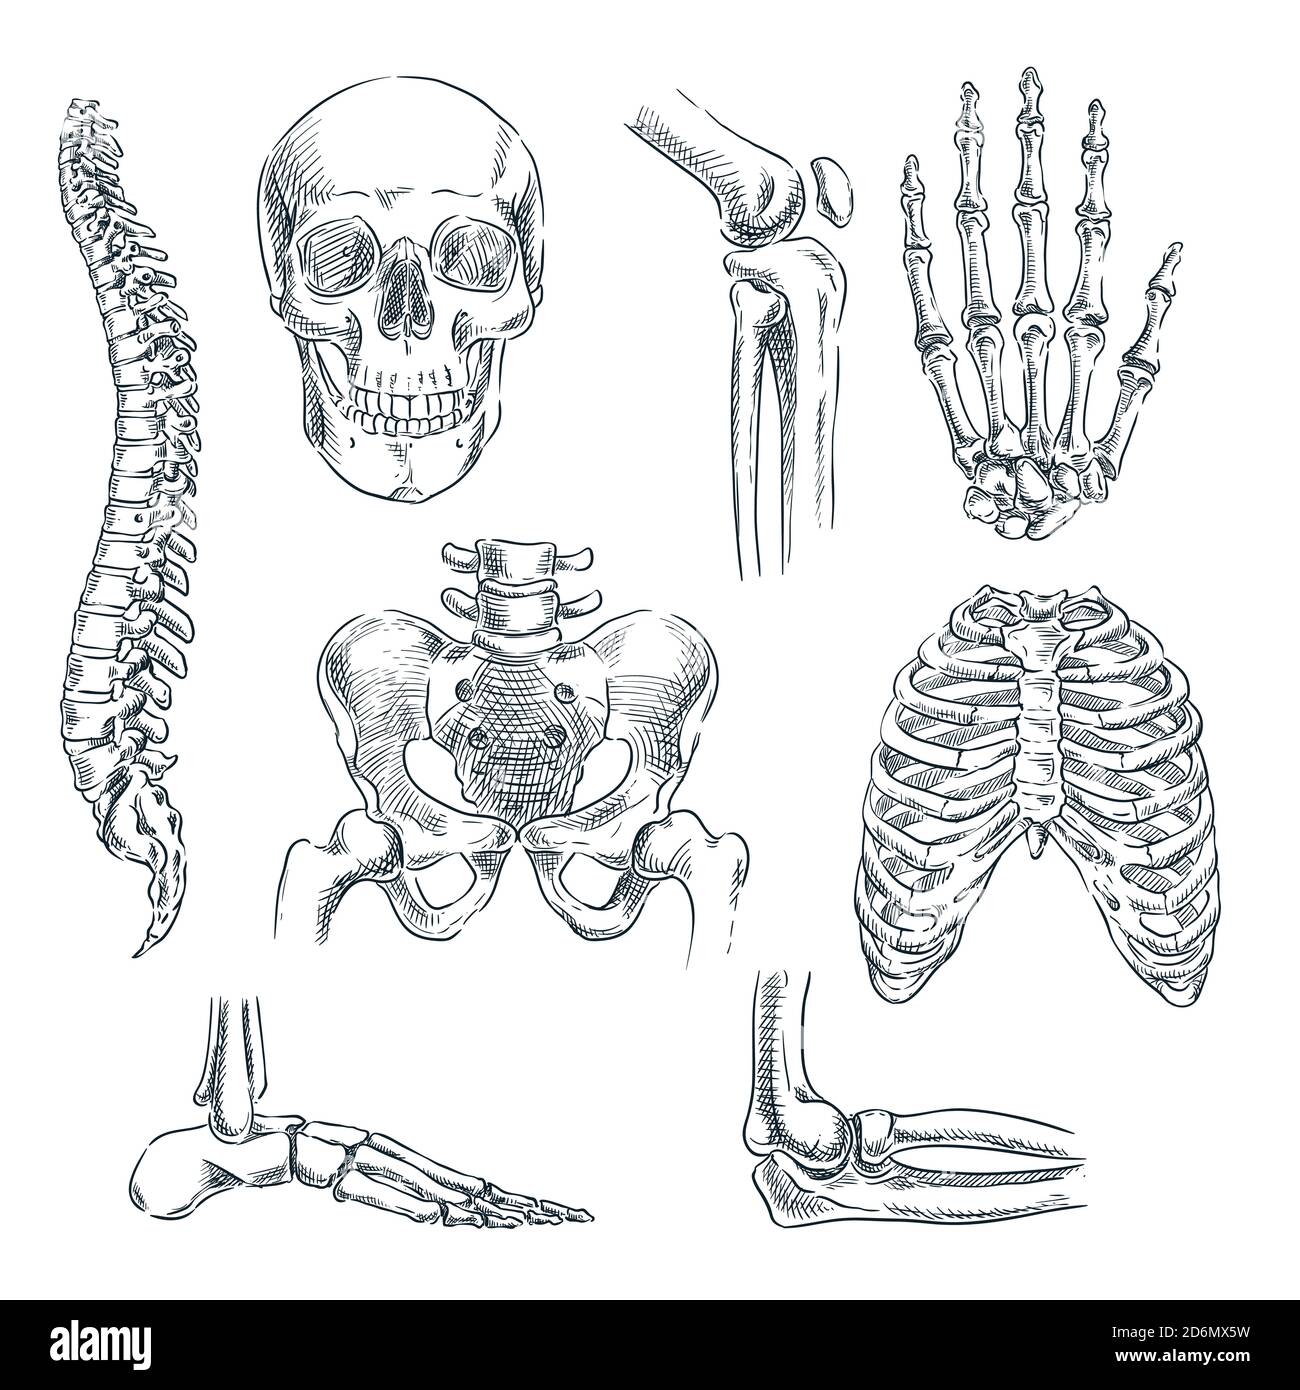 Scheletro umano, ossa e articolazioni. Illustrazione isolata dello schizzo vettoriale. Set di simboli anatomici di doodle disegnati a mano. Illustrazione Vettoriale